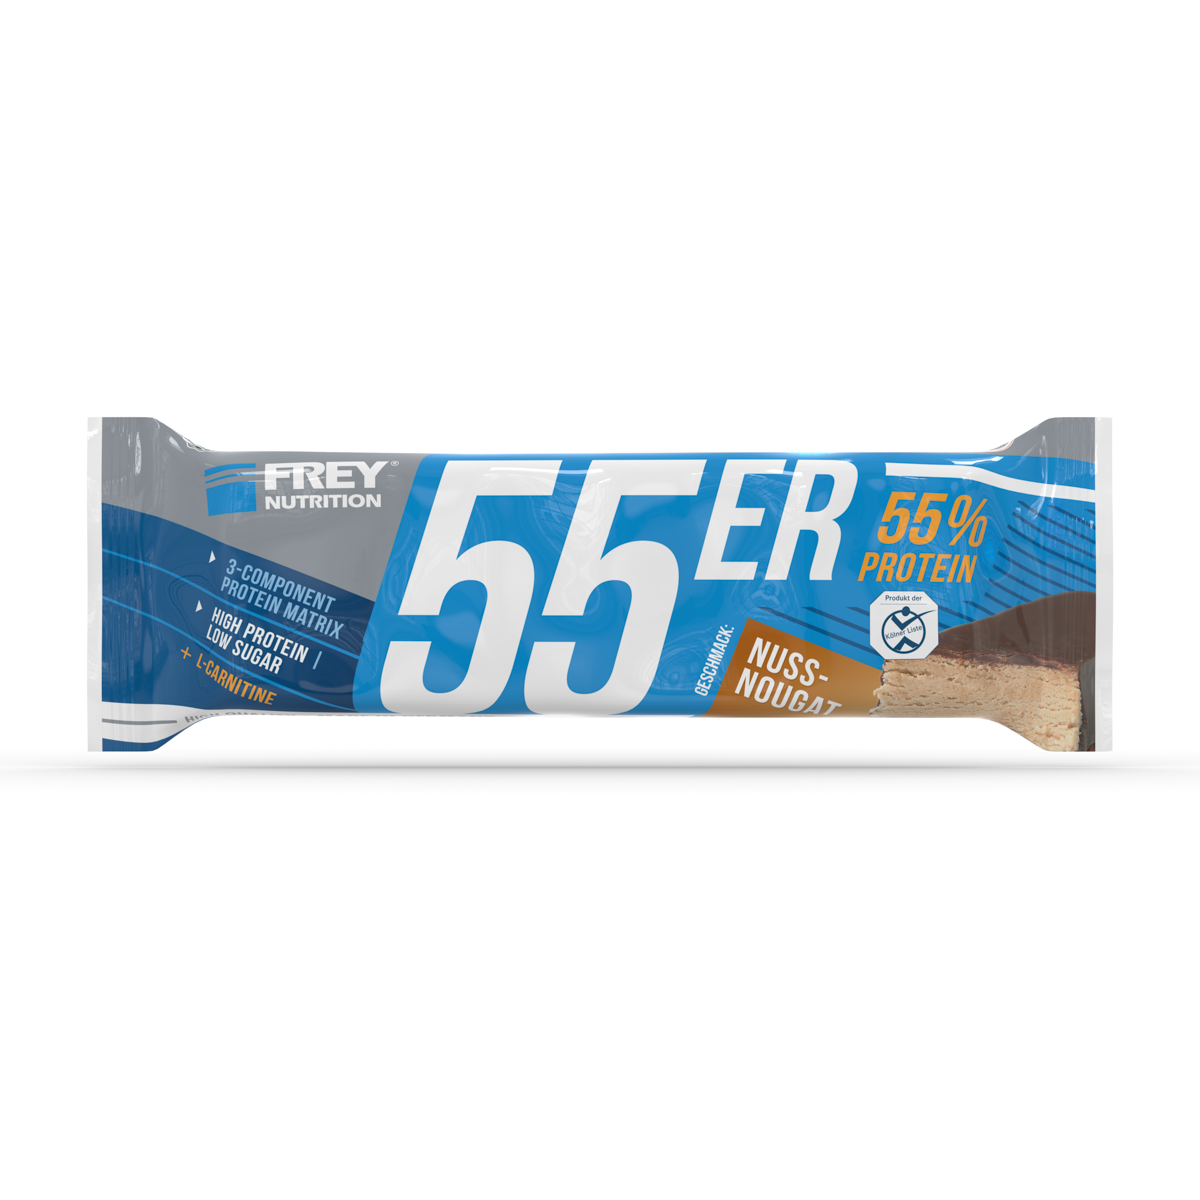 55ER - 50 G BARS